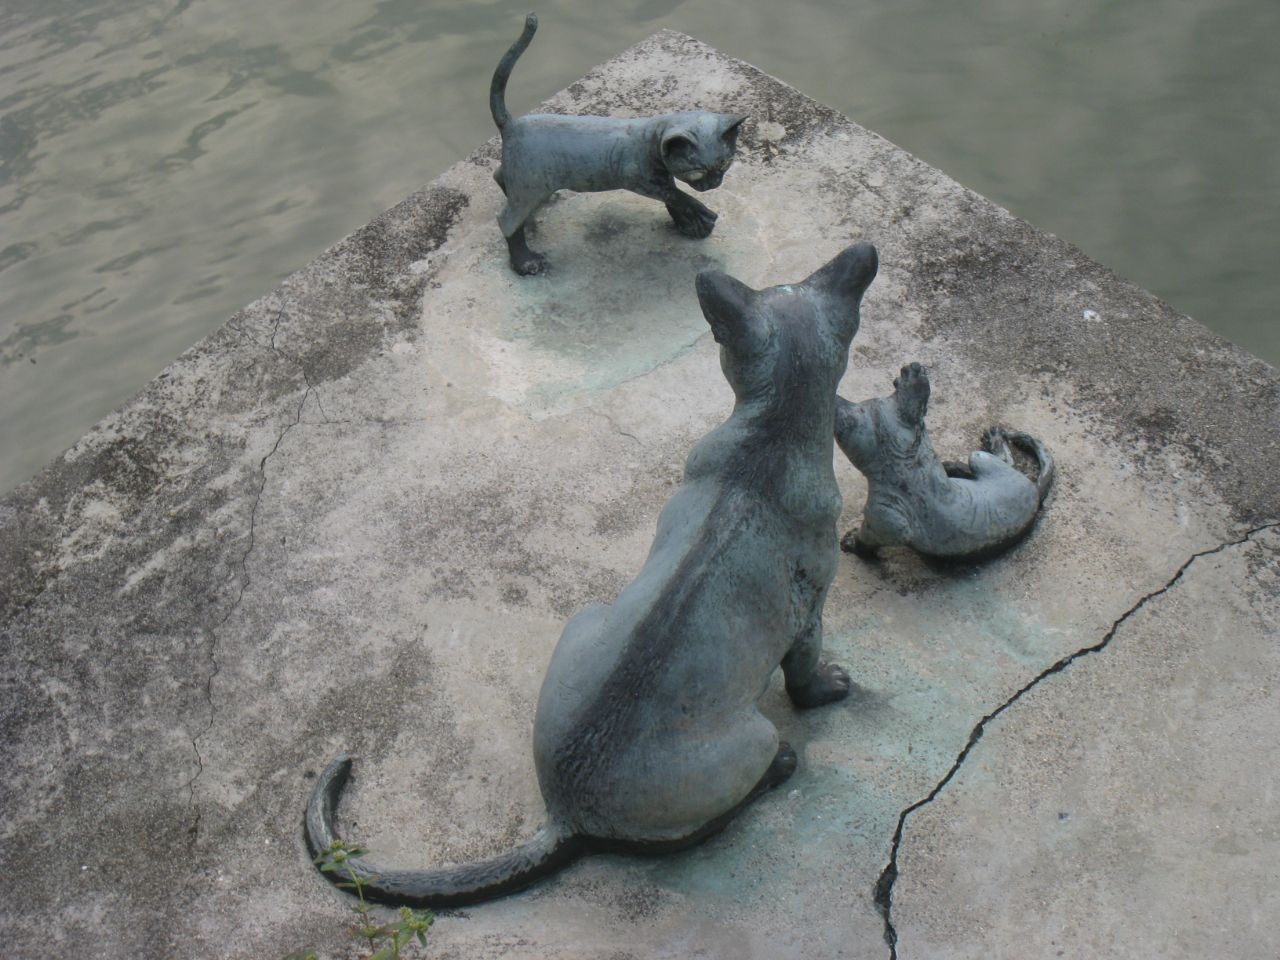 Городская скульптура вдоль набережной реки Сингапур (столица), Сингапур (город-государство)